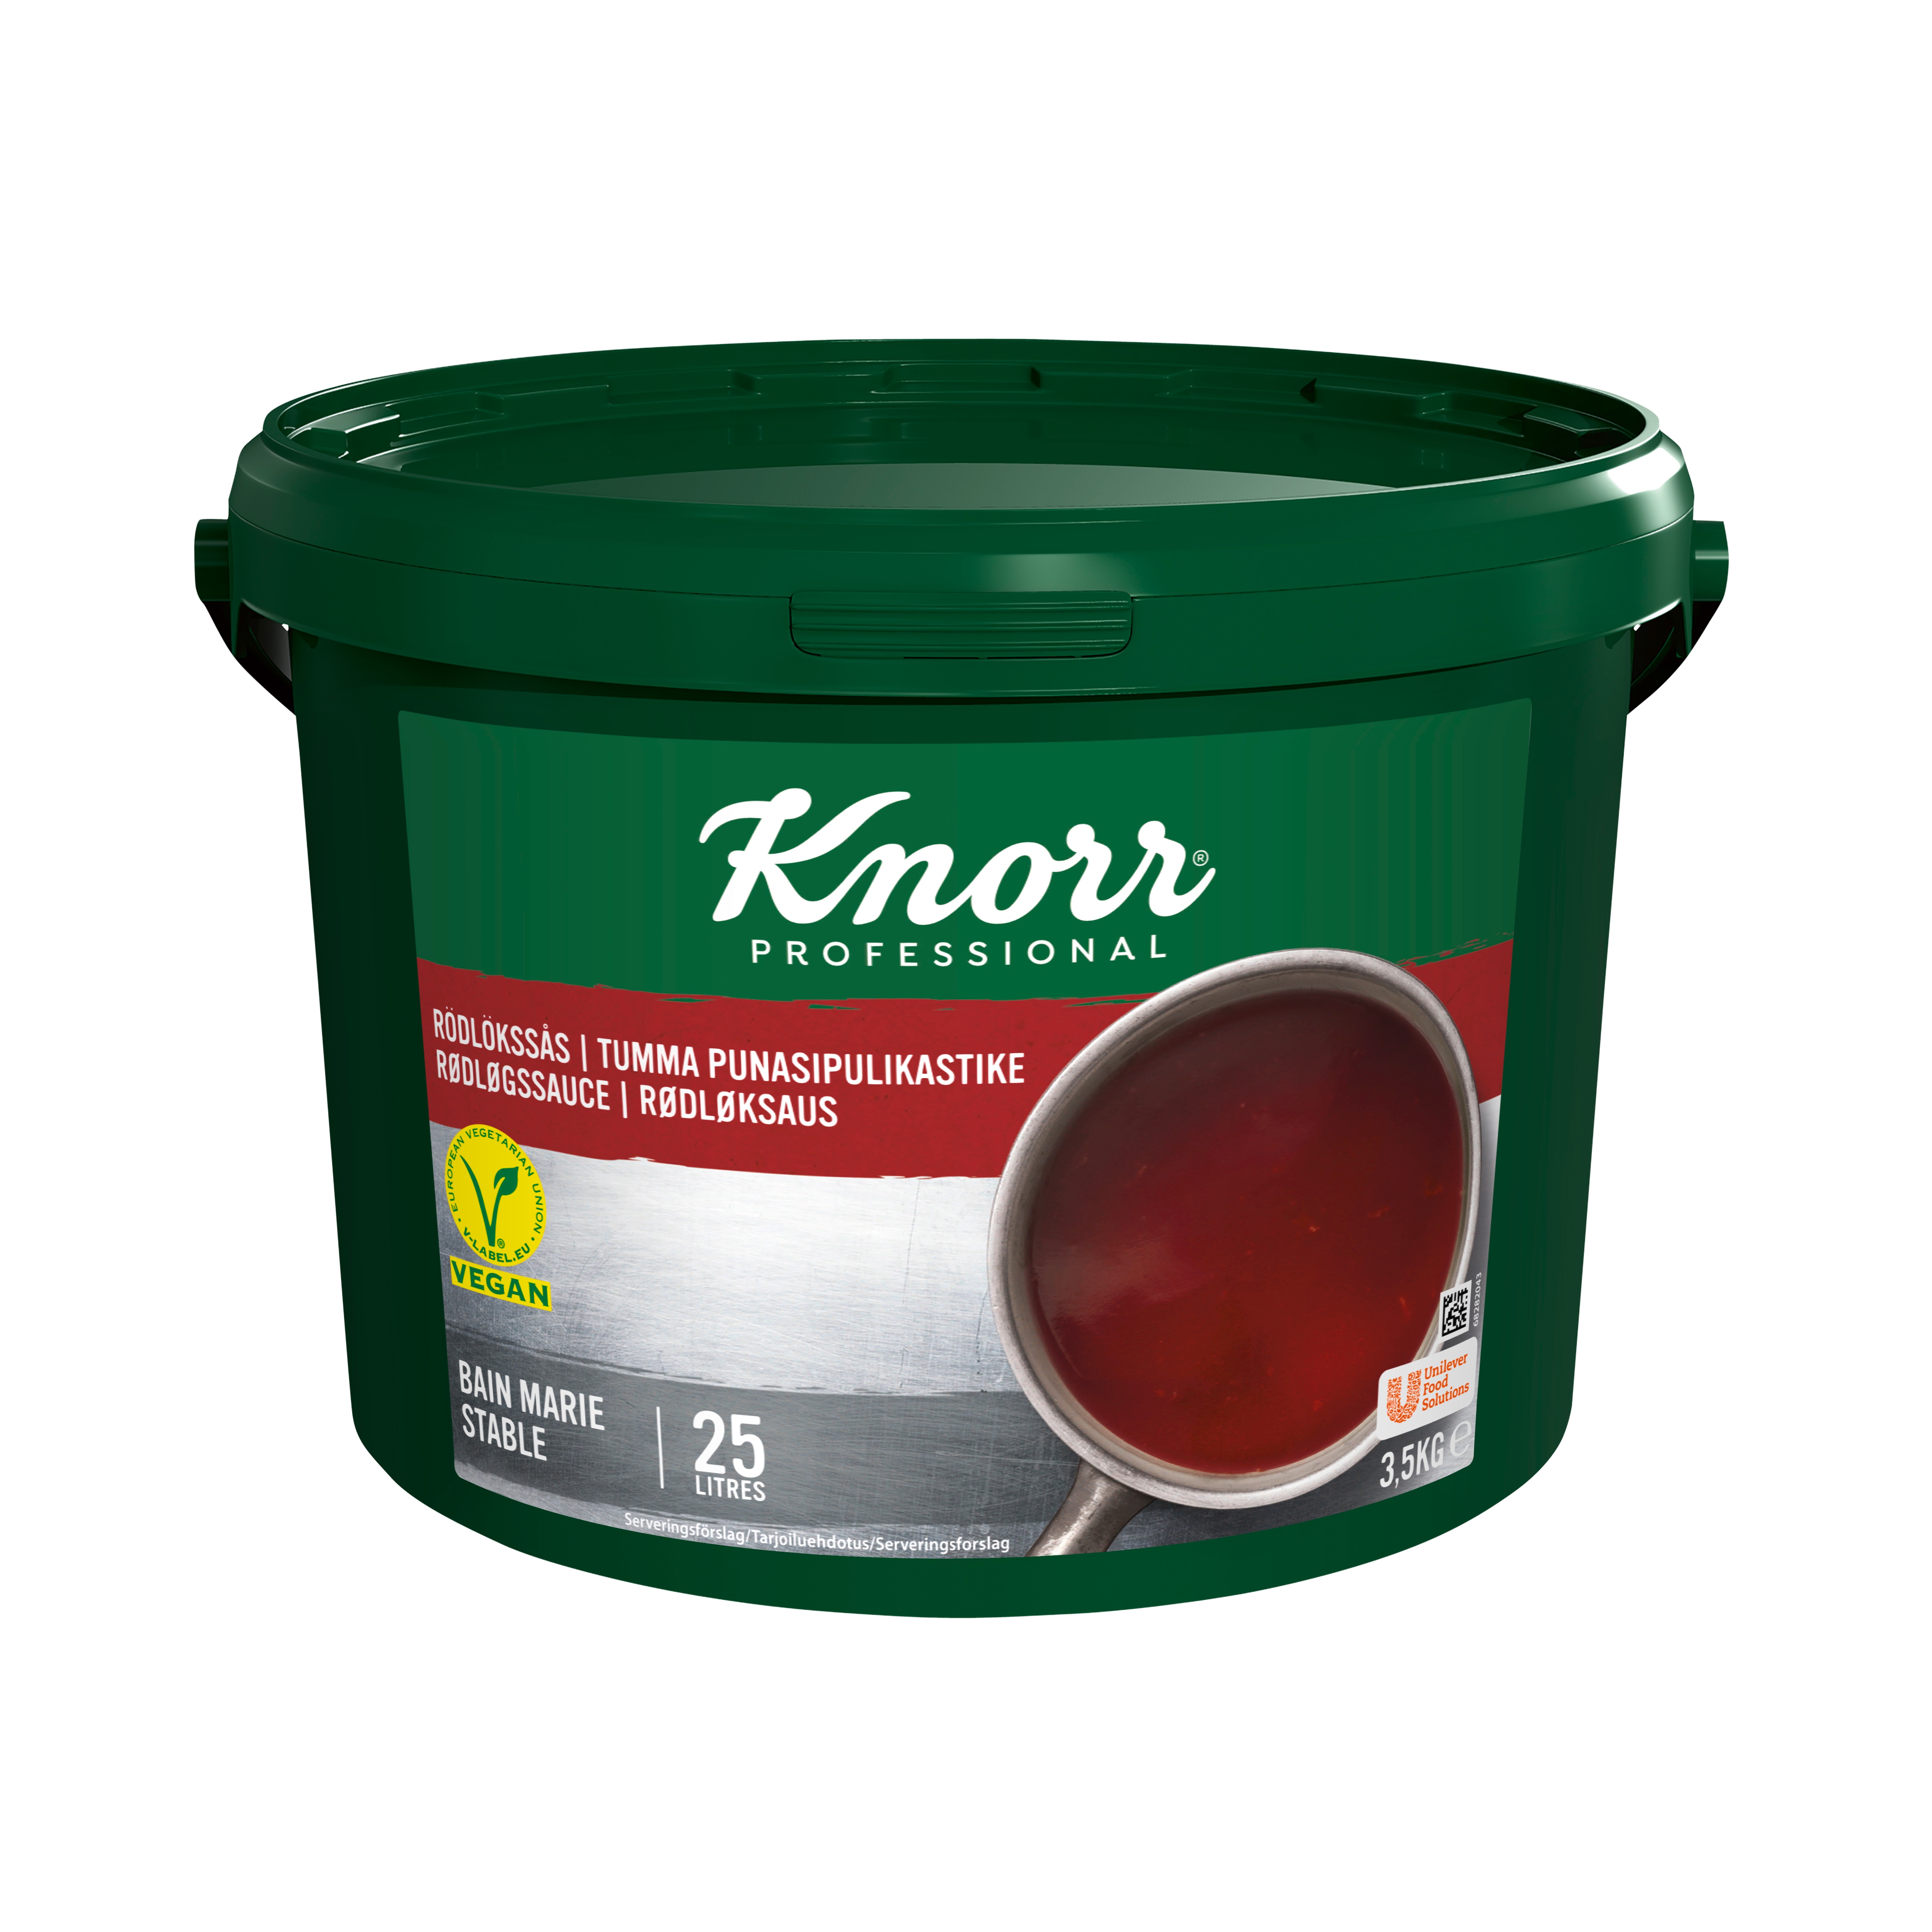 Knorr Tumma Punasipulikastike 3,5 kg / 25 L - 